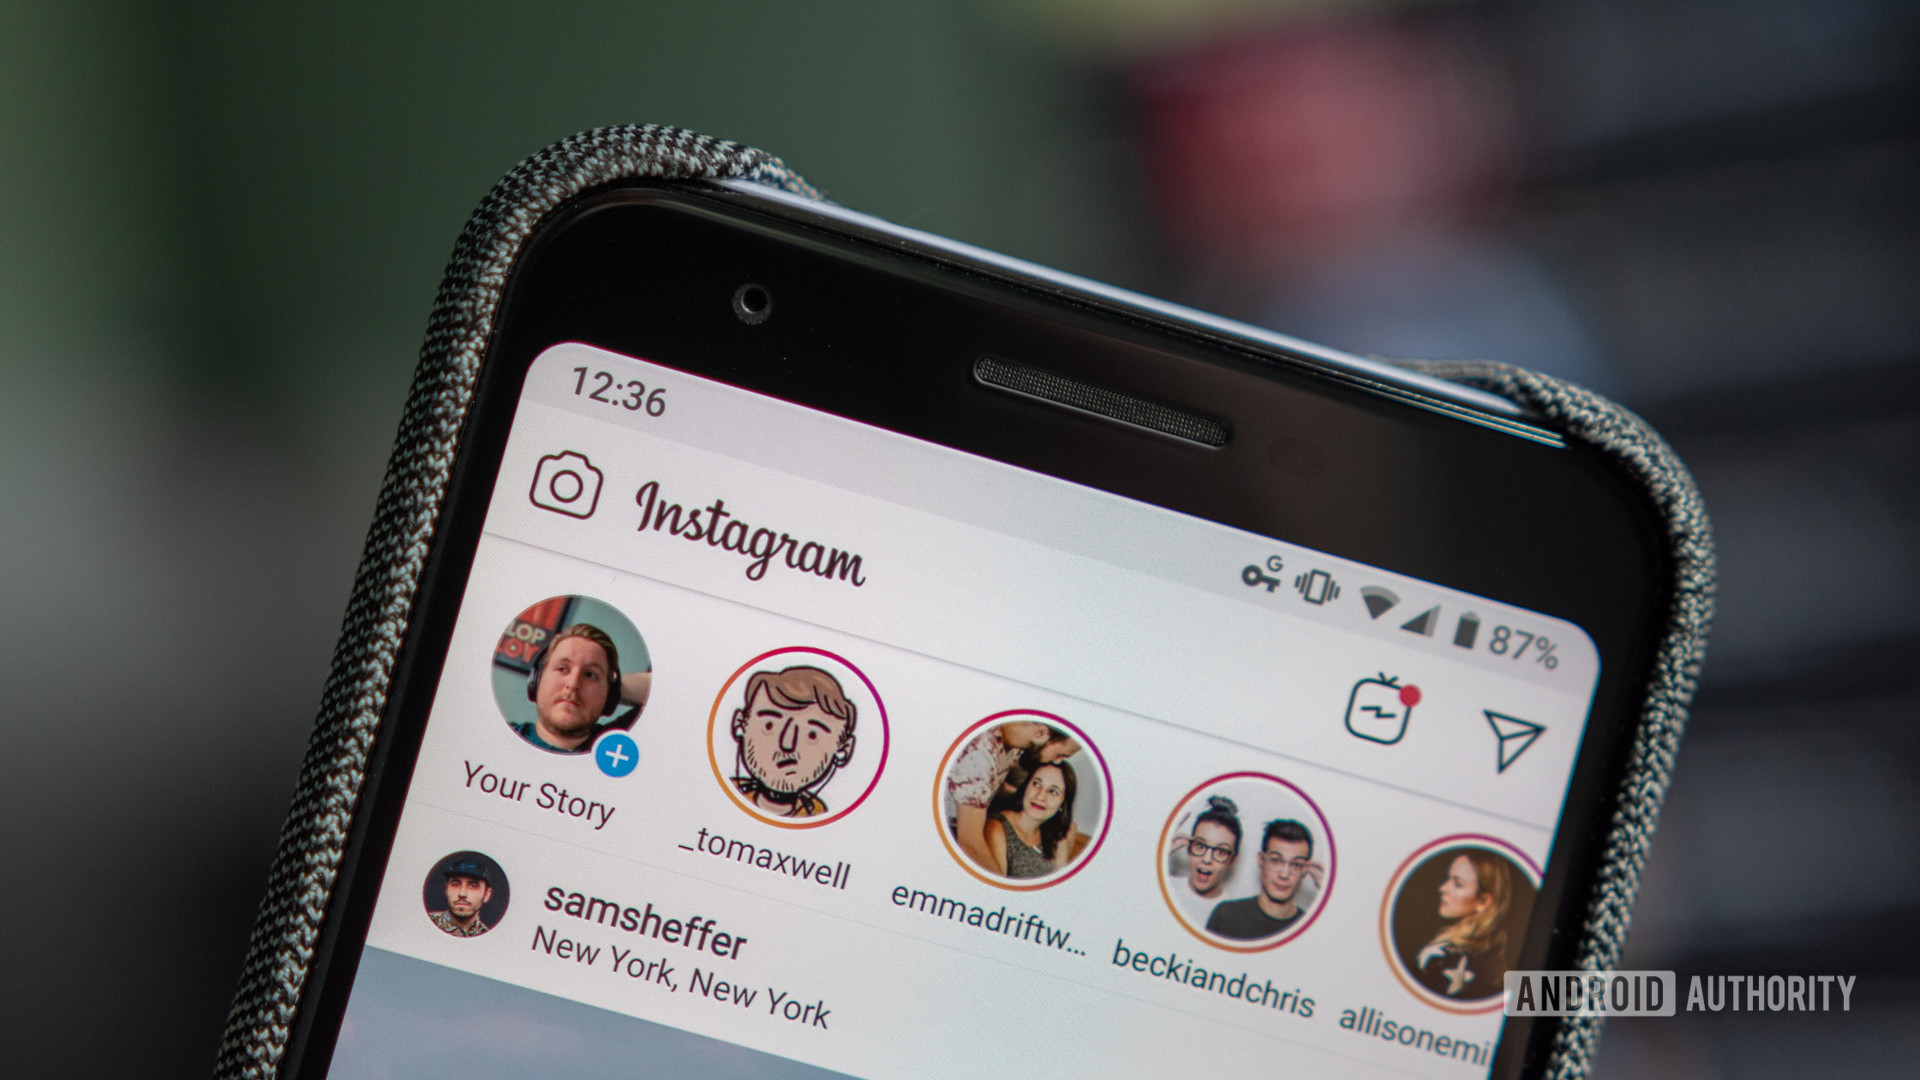 Instagram influencer as a side hustle job